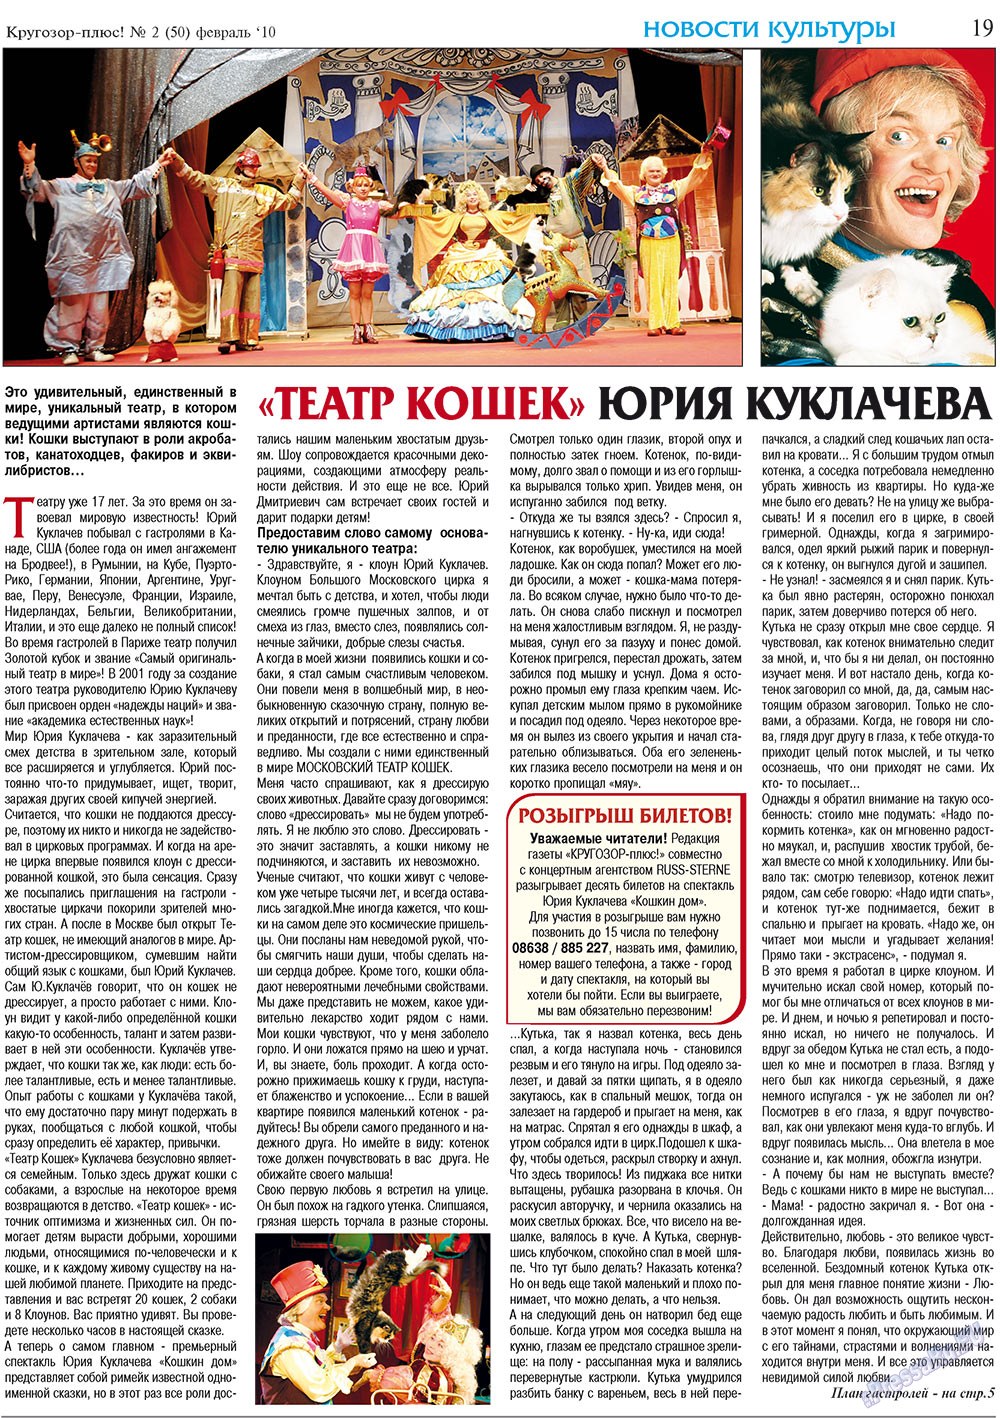 Кругозор плюс!, газета. 2010 №2 стр.19